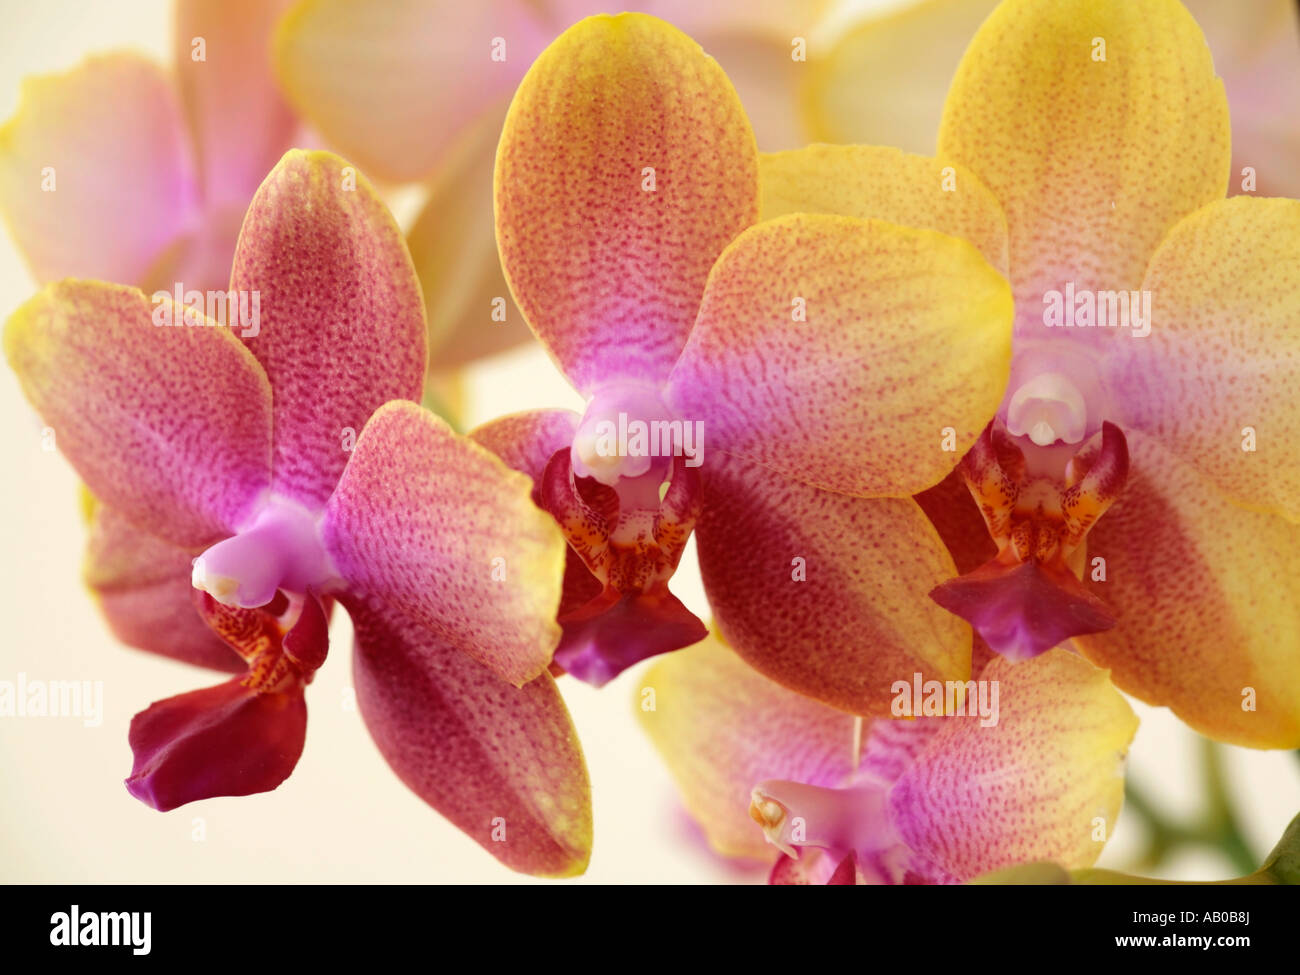 Pic de fleurs d'orchidées Phalaenopsis de fleurs jaunes repérées avec rouge foncé et labellum rouge foncé Banque D'Images